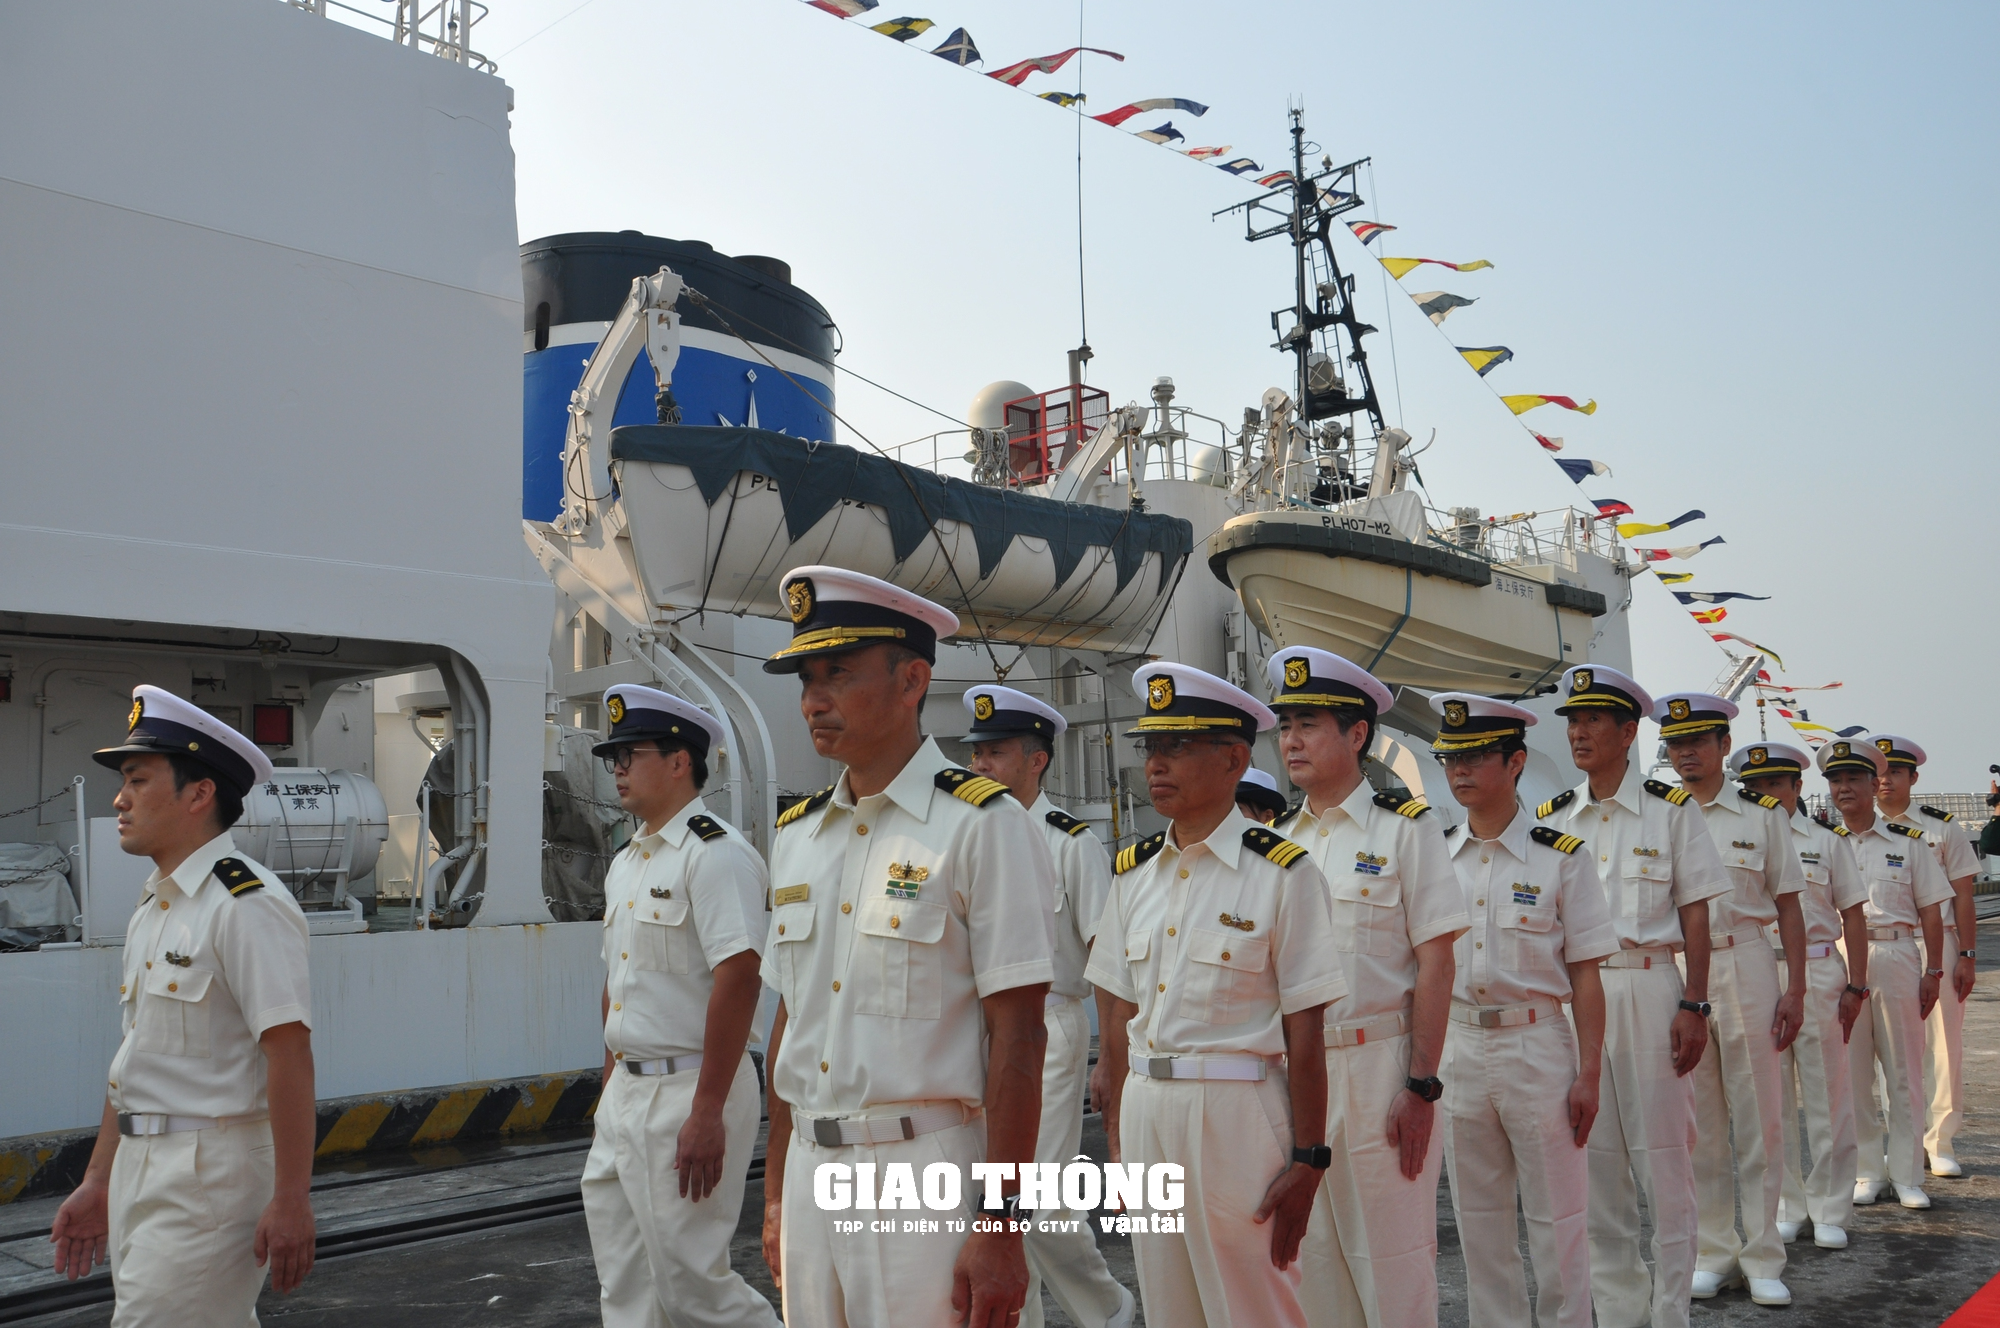 Lực lượng bảo vệ Bờ biển Nhật Bản chia sẻ kinh nghiệm bảo đảm an ninh, an toàn hàng hải - Ảnh 4.